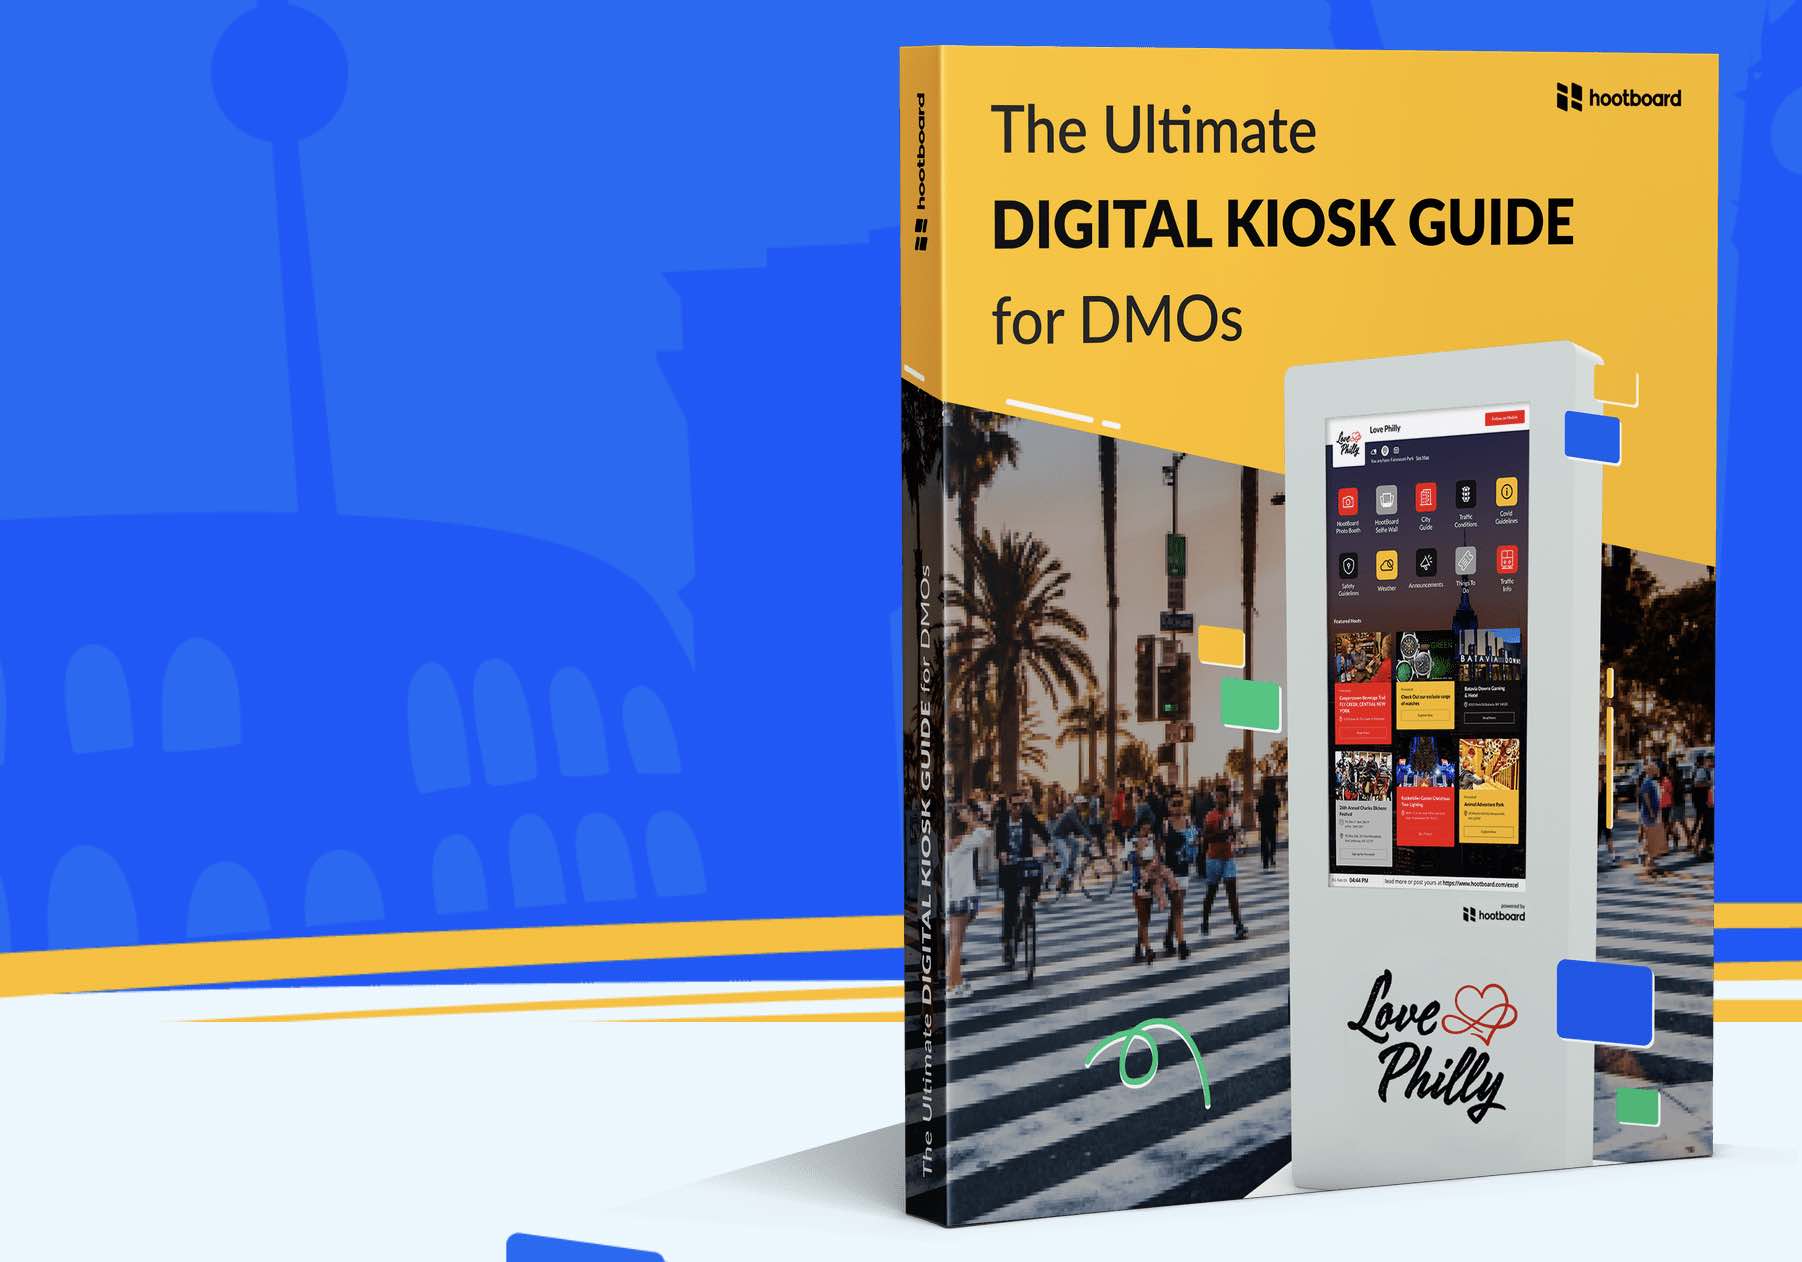 HootBoards DMO guide for digital kiosks and DMOs